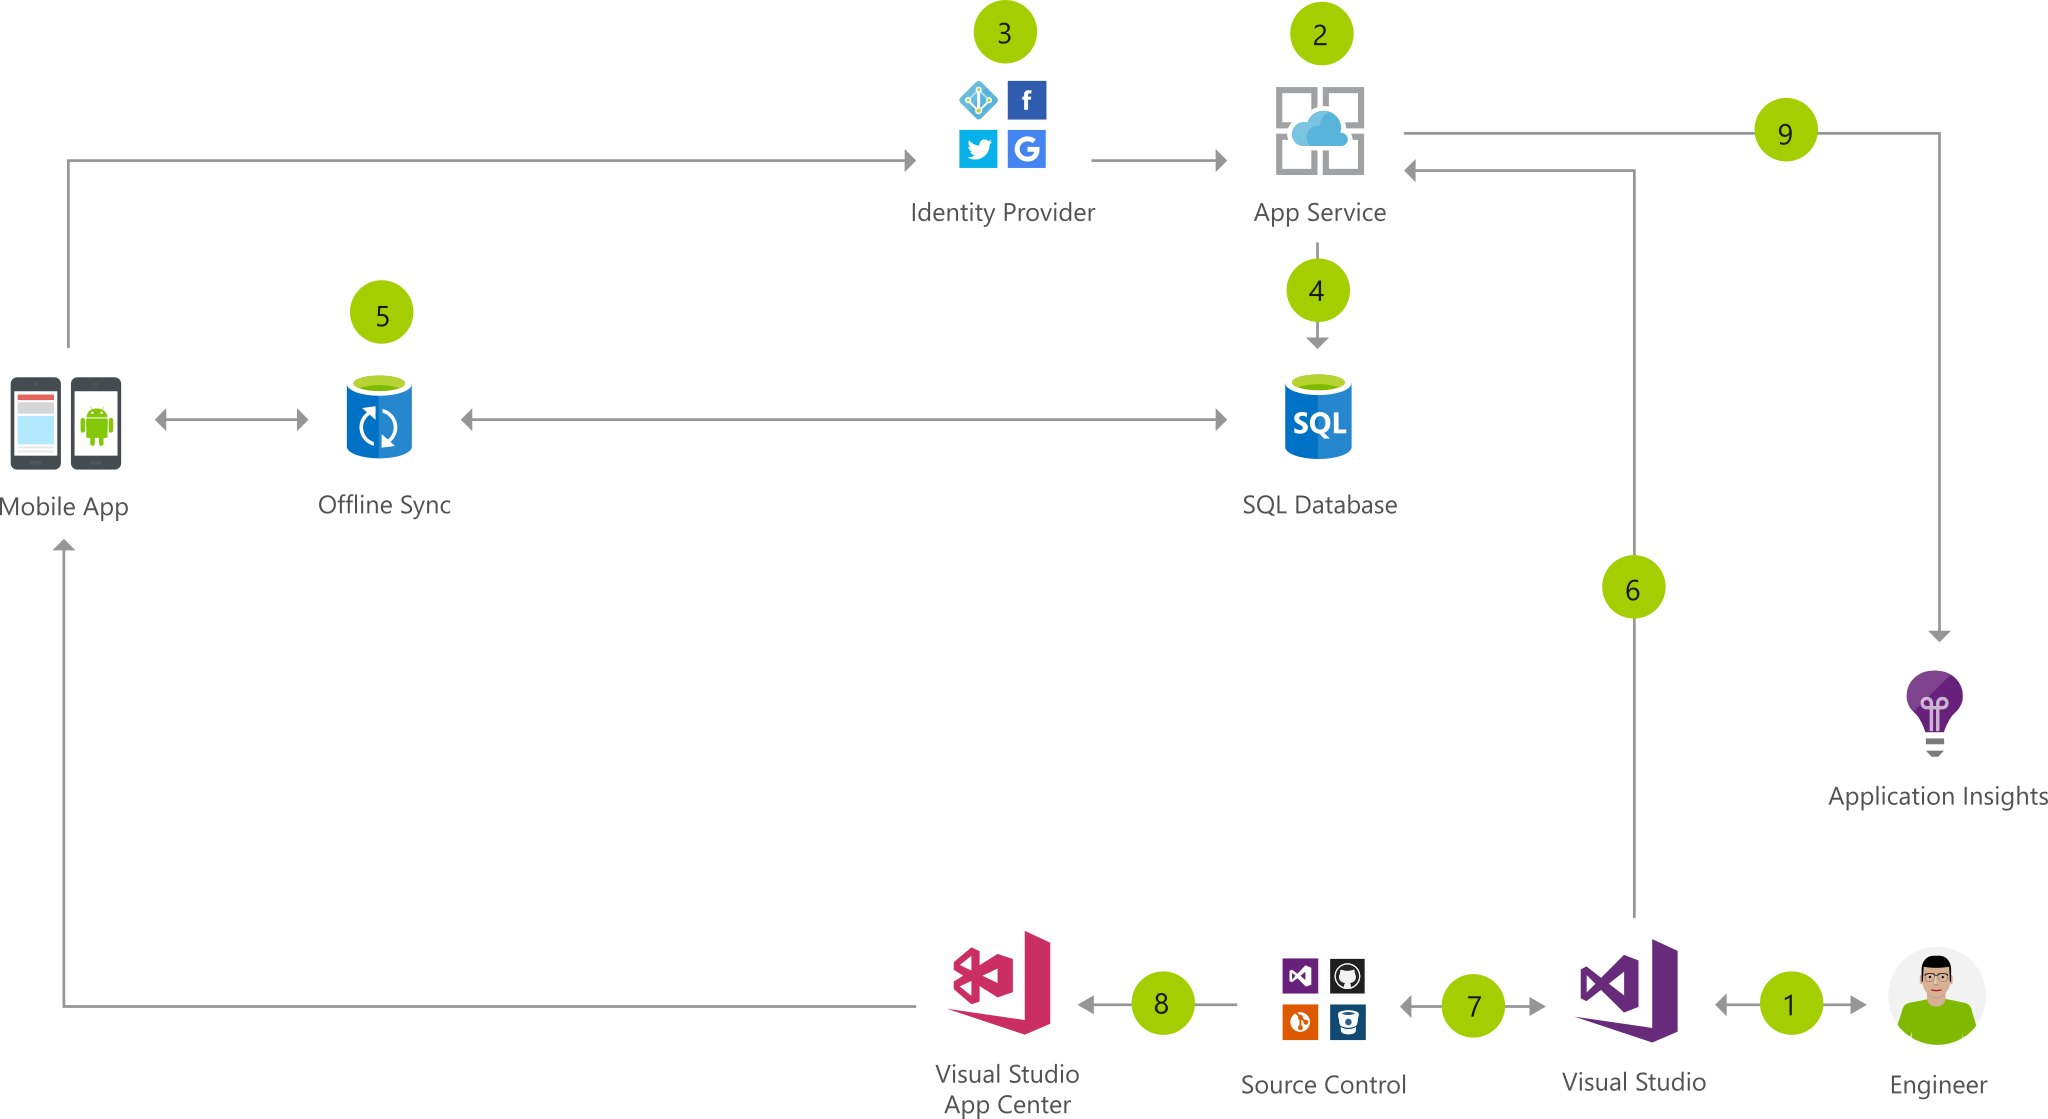 In het architectuurdiagram ziet u dat een technicus een app maakt in Visual Studio om te implementeren met App Services en om te analyseren met Application Insights.